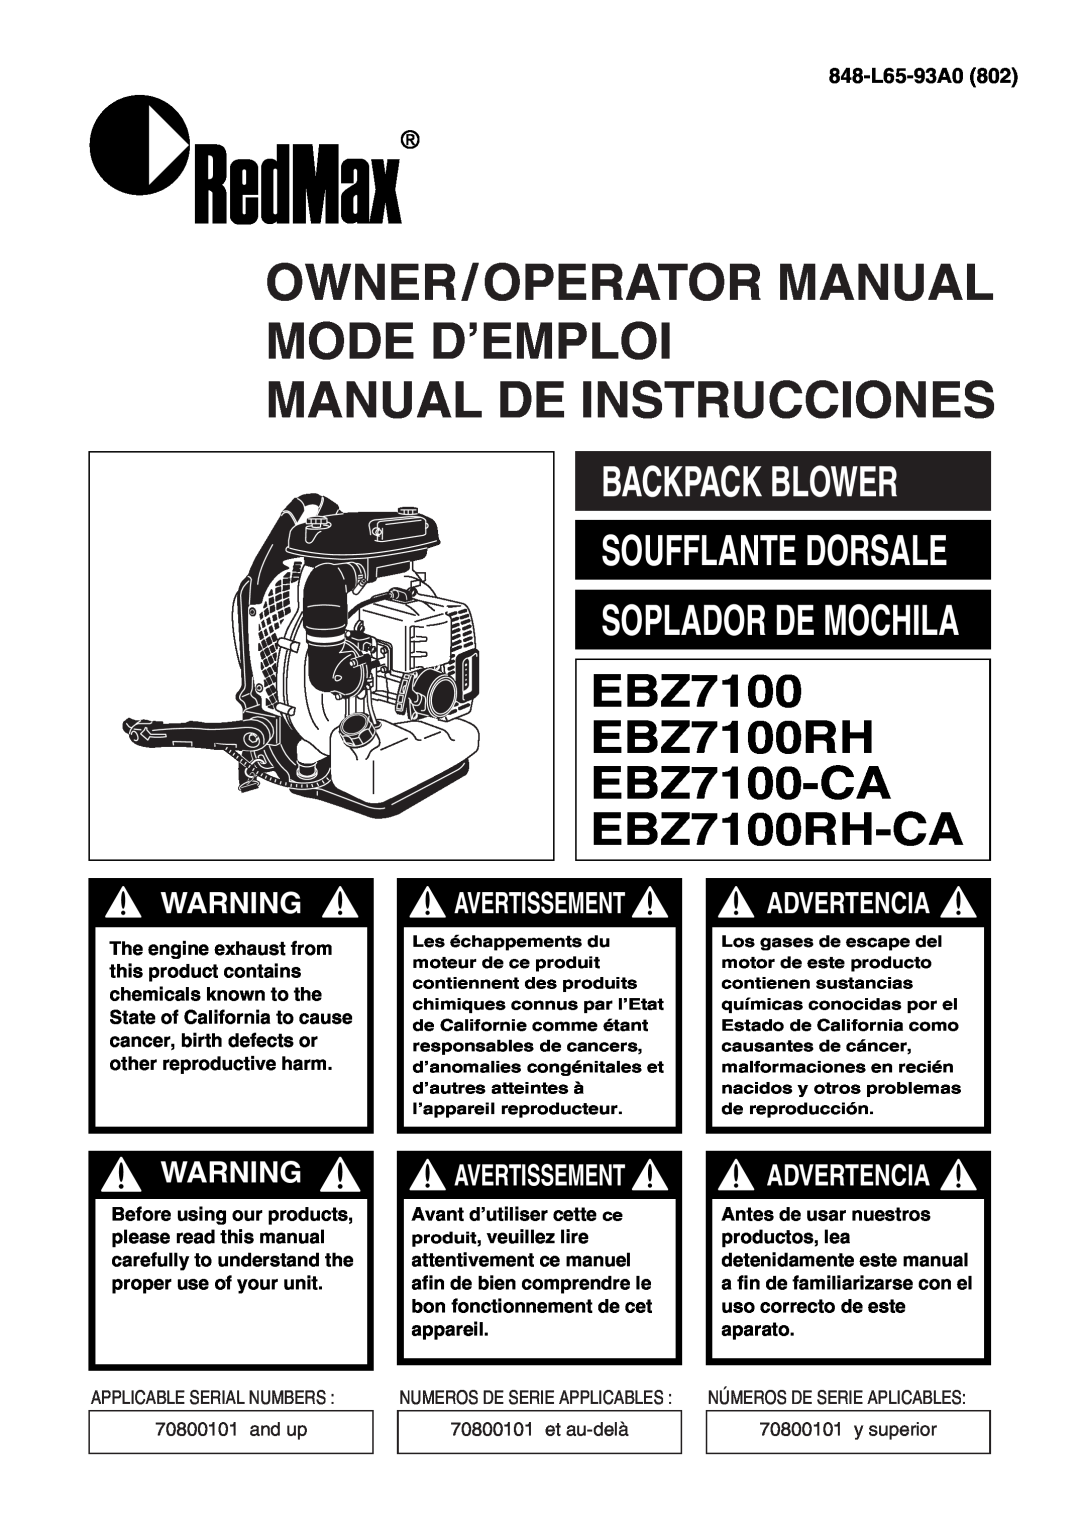 RedMax EBZ7100 manual Backpack Blower, 848-L65-93A0, Owner/Operator Manual Mode D’Emploi Manual De Instrucciones 